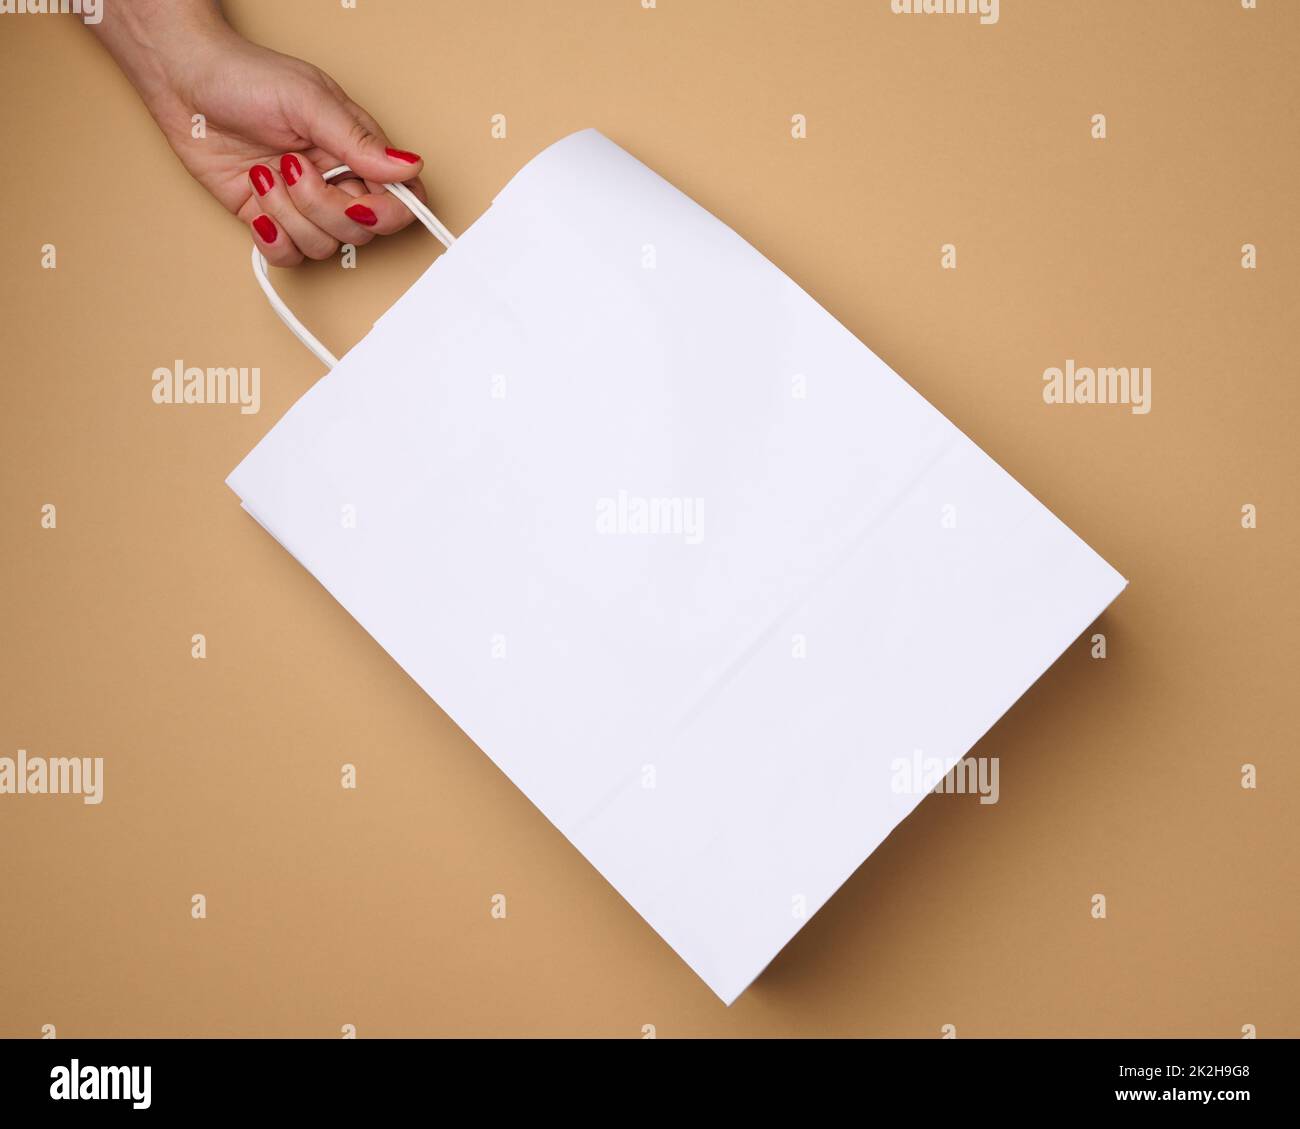 Weibliche Hand hält eine leere weiße Papiertüte an den Griffen auf braunem Hintergrund, Ablehnung von Plastiktüten Stockfoto